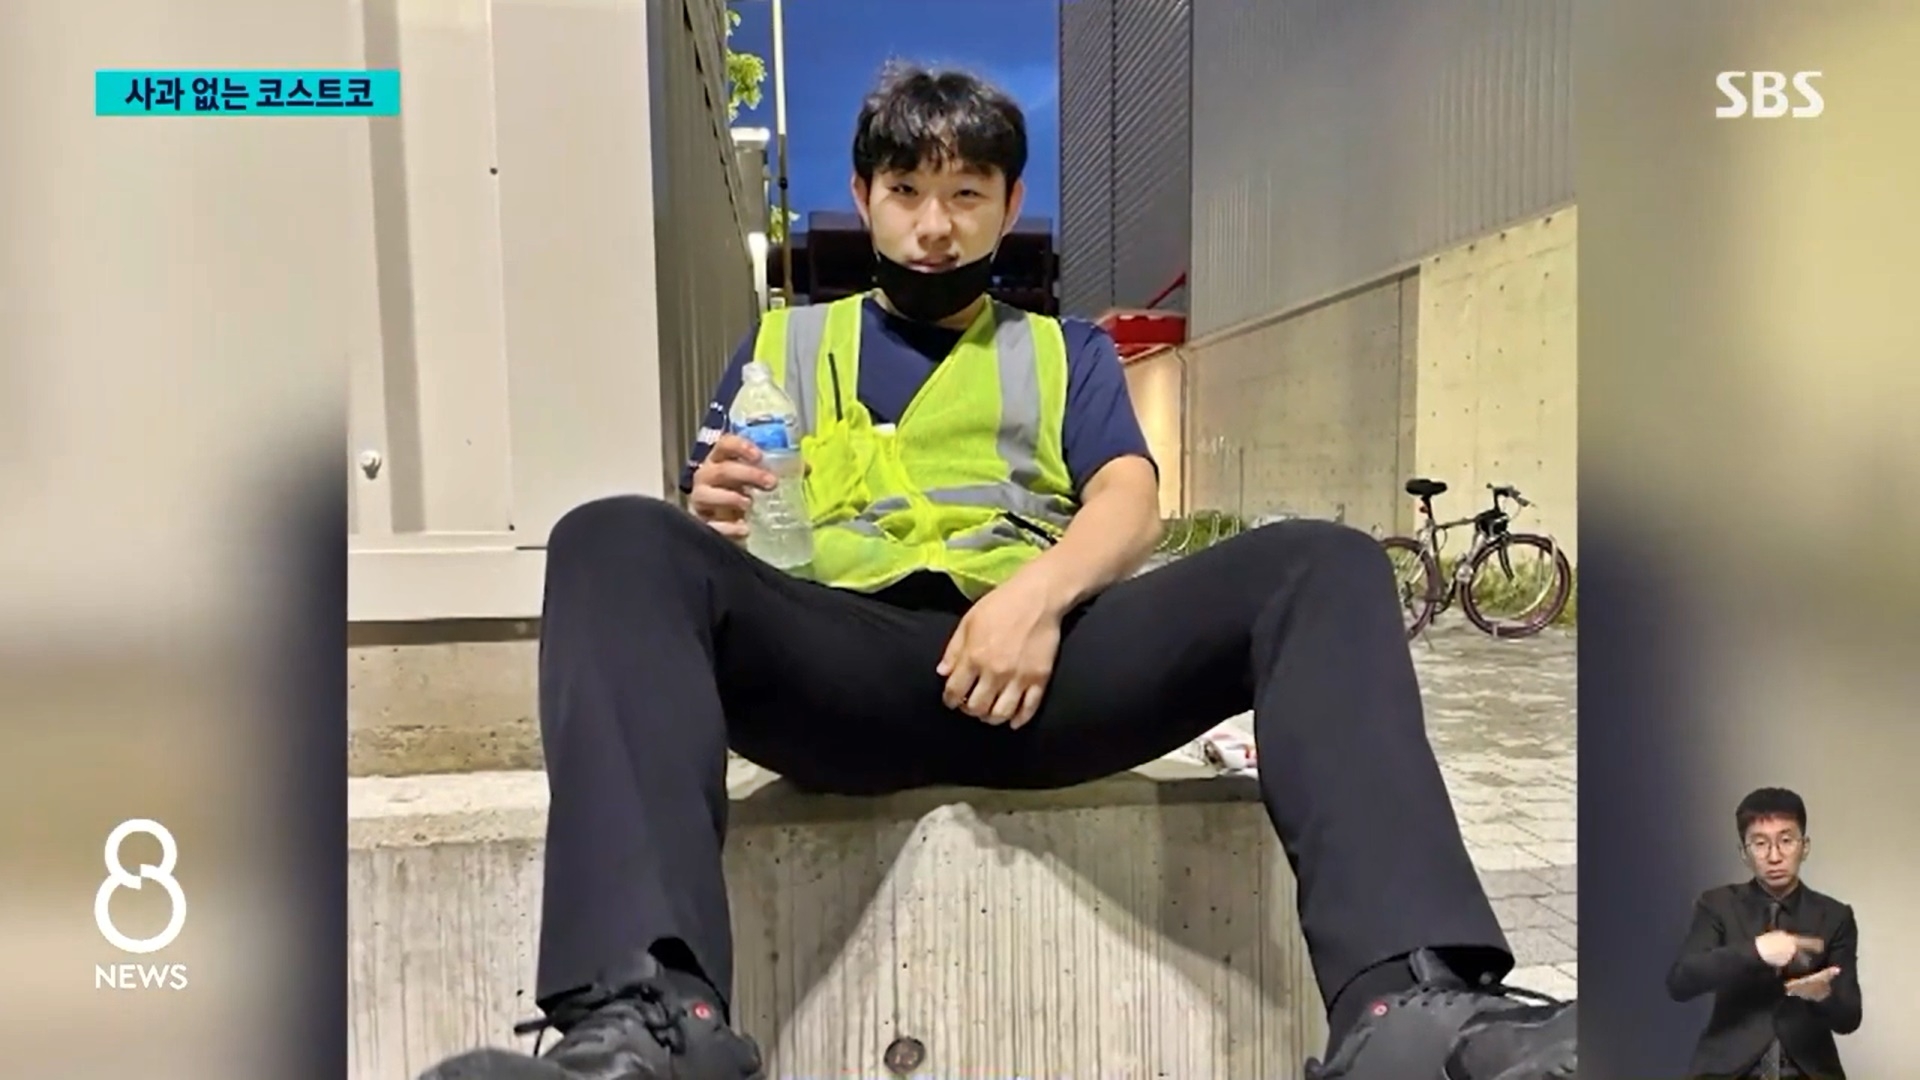 6월 19일 오후 7시쯤 코스트코 하남점 주차장에서 카트 및 주차 관리 업무를 하던 중 갑자기 쓰러져 숨진 직원 김동호(29)씨. SBS 화면.